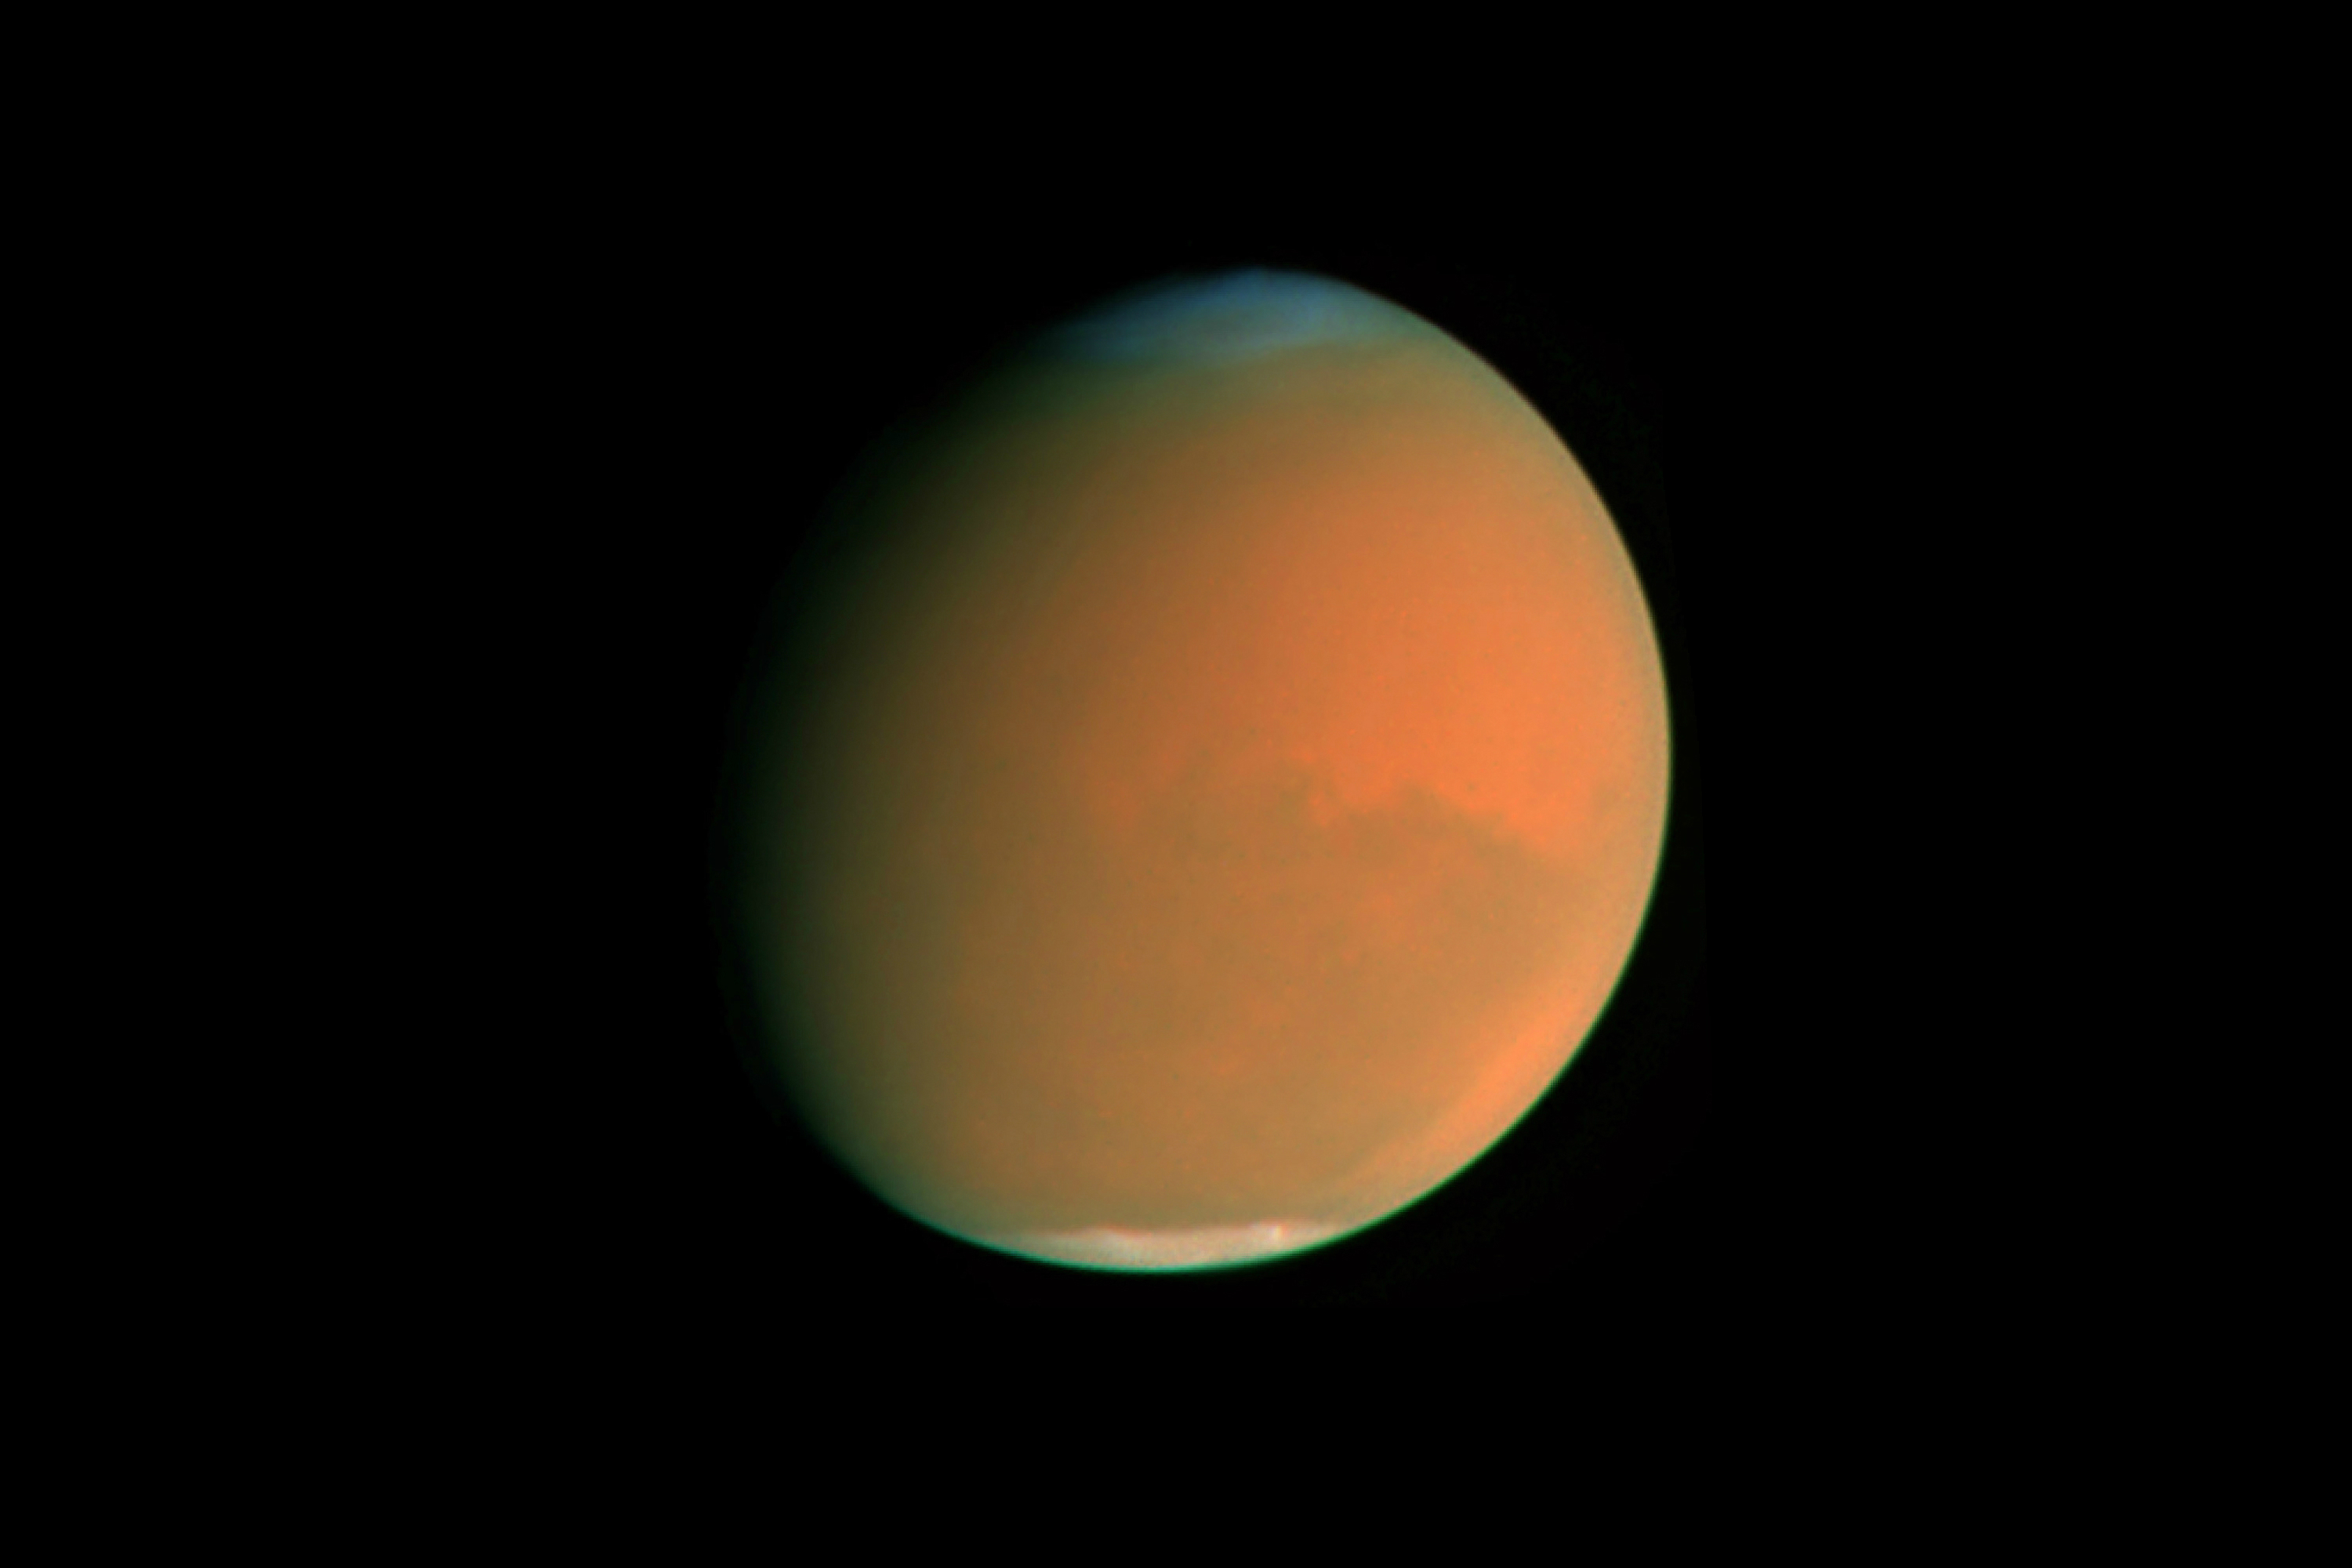 space vs boeing mars dust storm